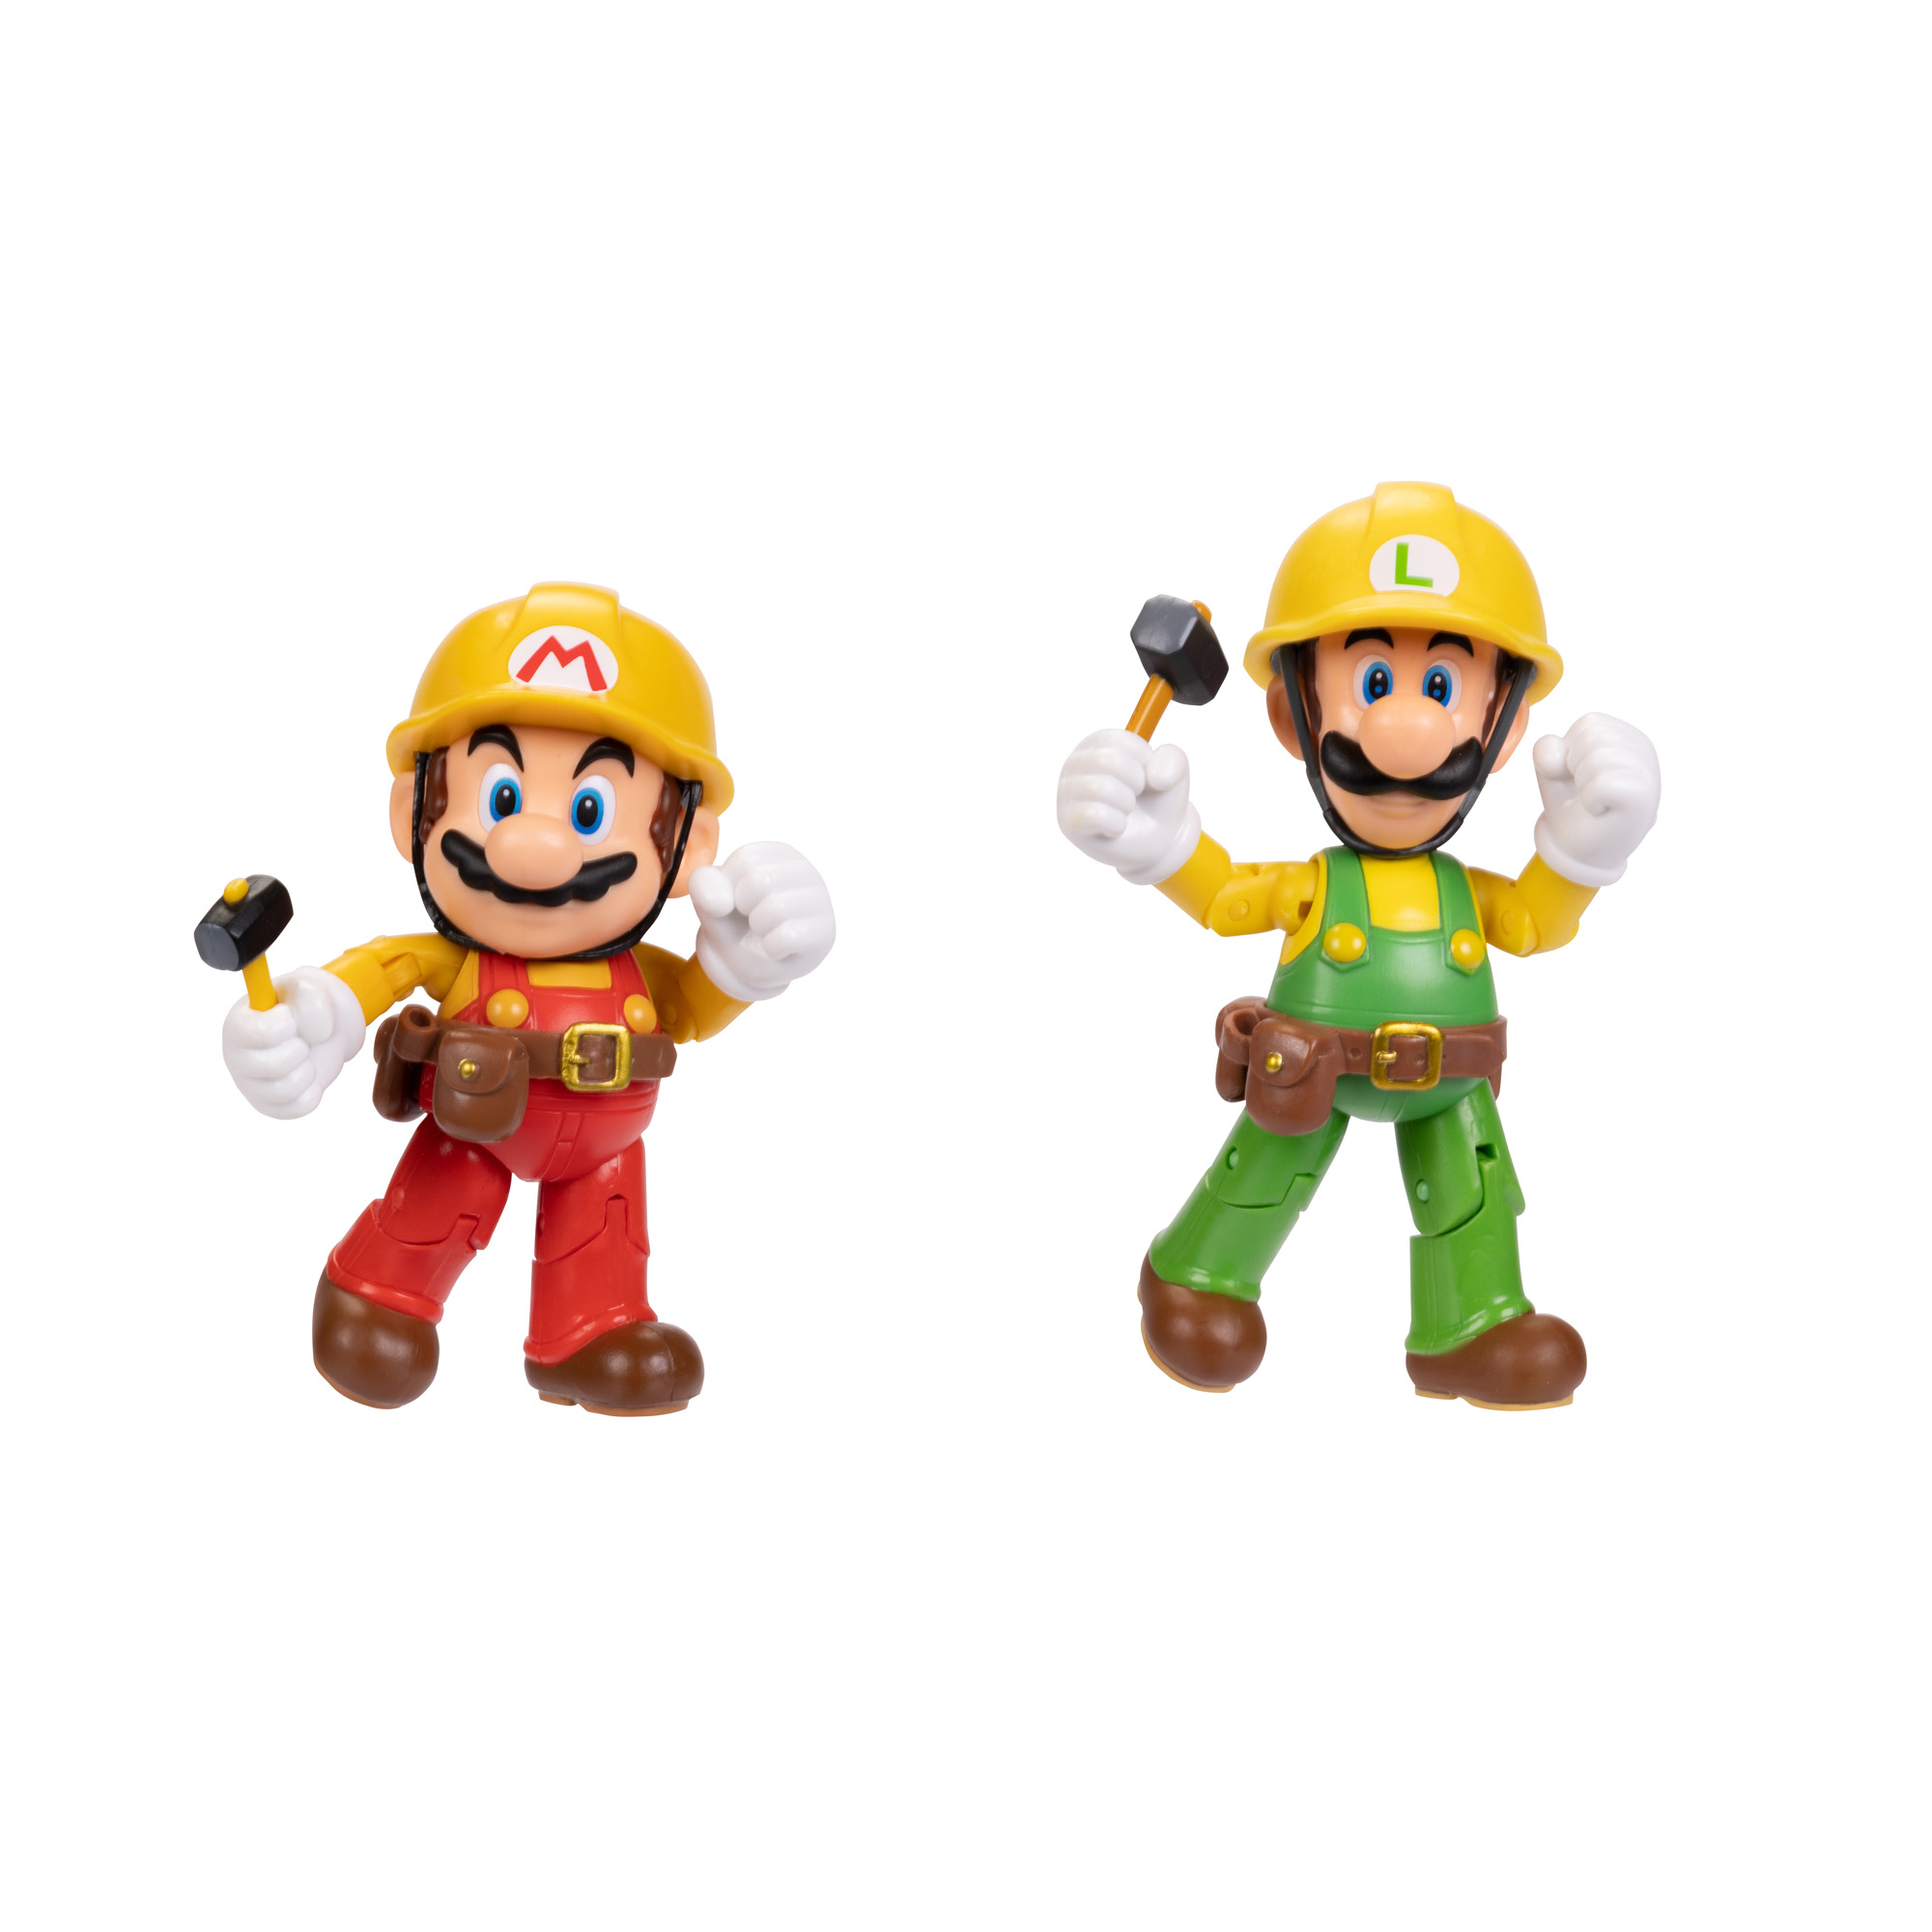 SUPER MARIO Nintendo Super Mario 10cm Maker Luigi Maker, 2er-Pack: Spielware Mario Figuren 